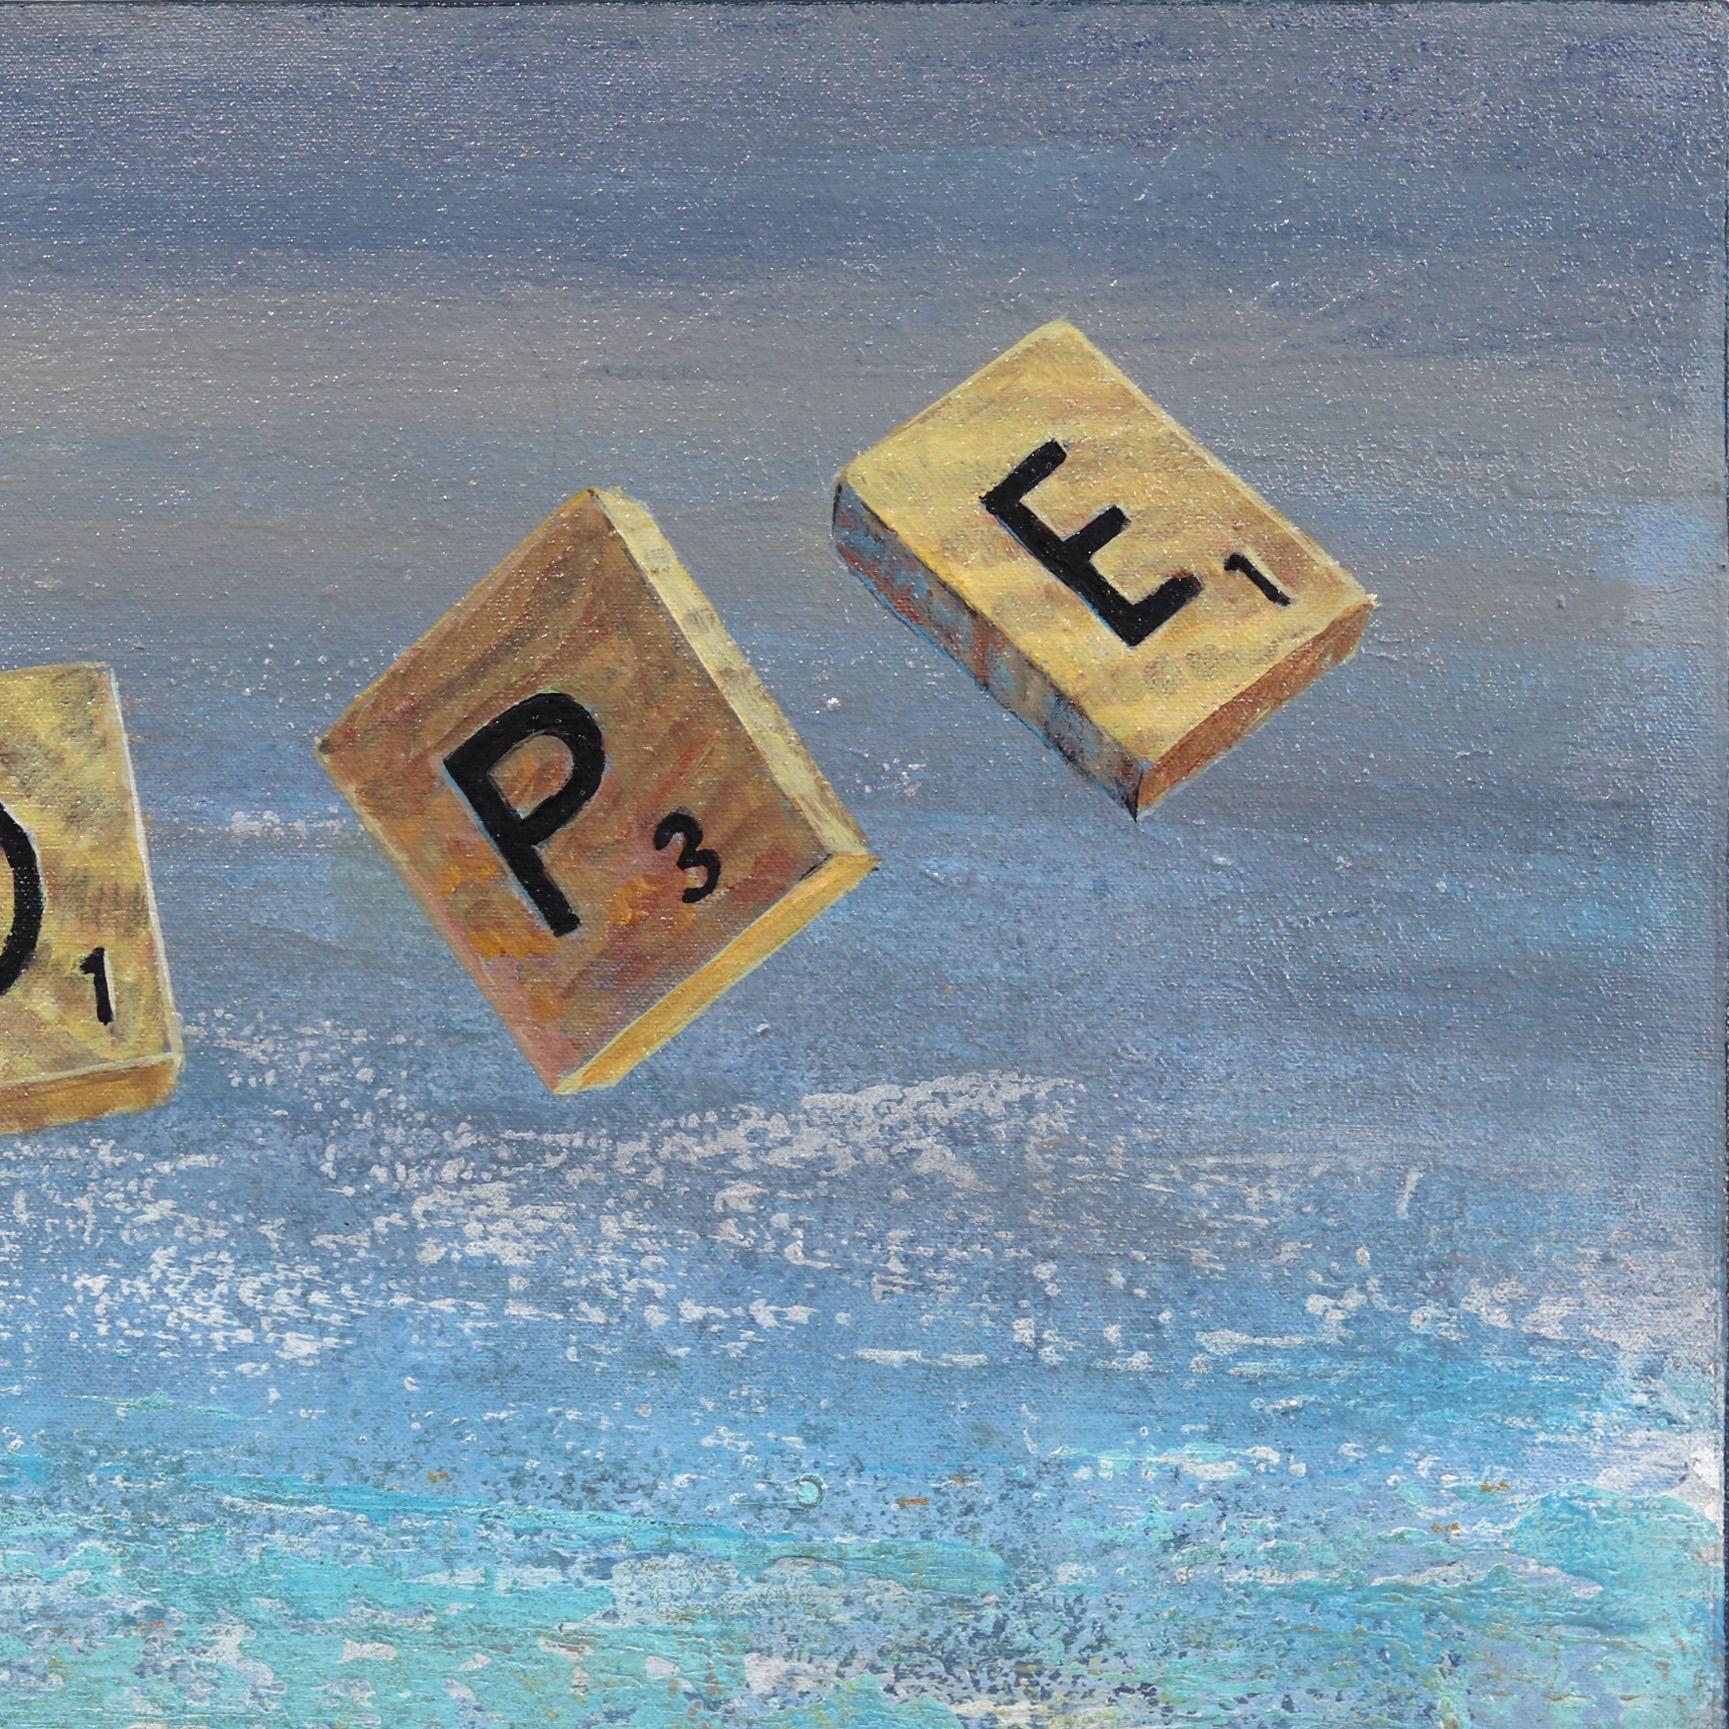 Kathleen Keifers Originalkunstwerke gehören zu den bedeutendsten Ausdrucksformen des Neuen Kalifornischen Realismus. Keifer bringt eine neue Perspektive in ihre farbenfrohen Szenen des täglichen Lebens in der Sonne entlang der Pazifikküste (und